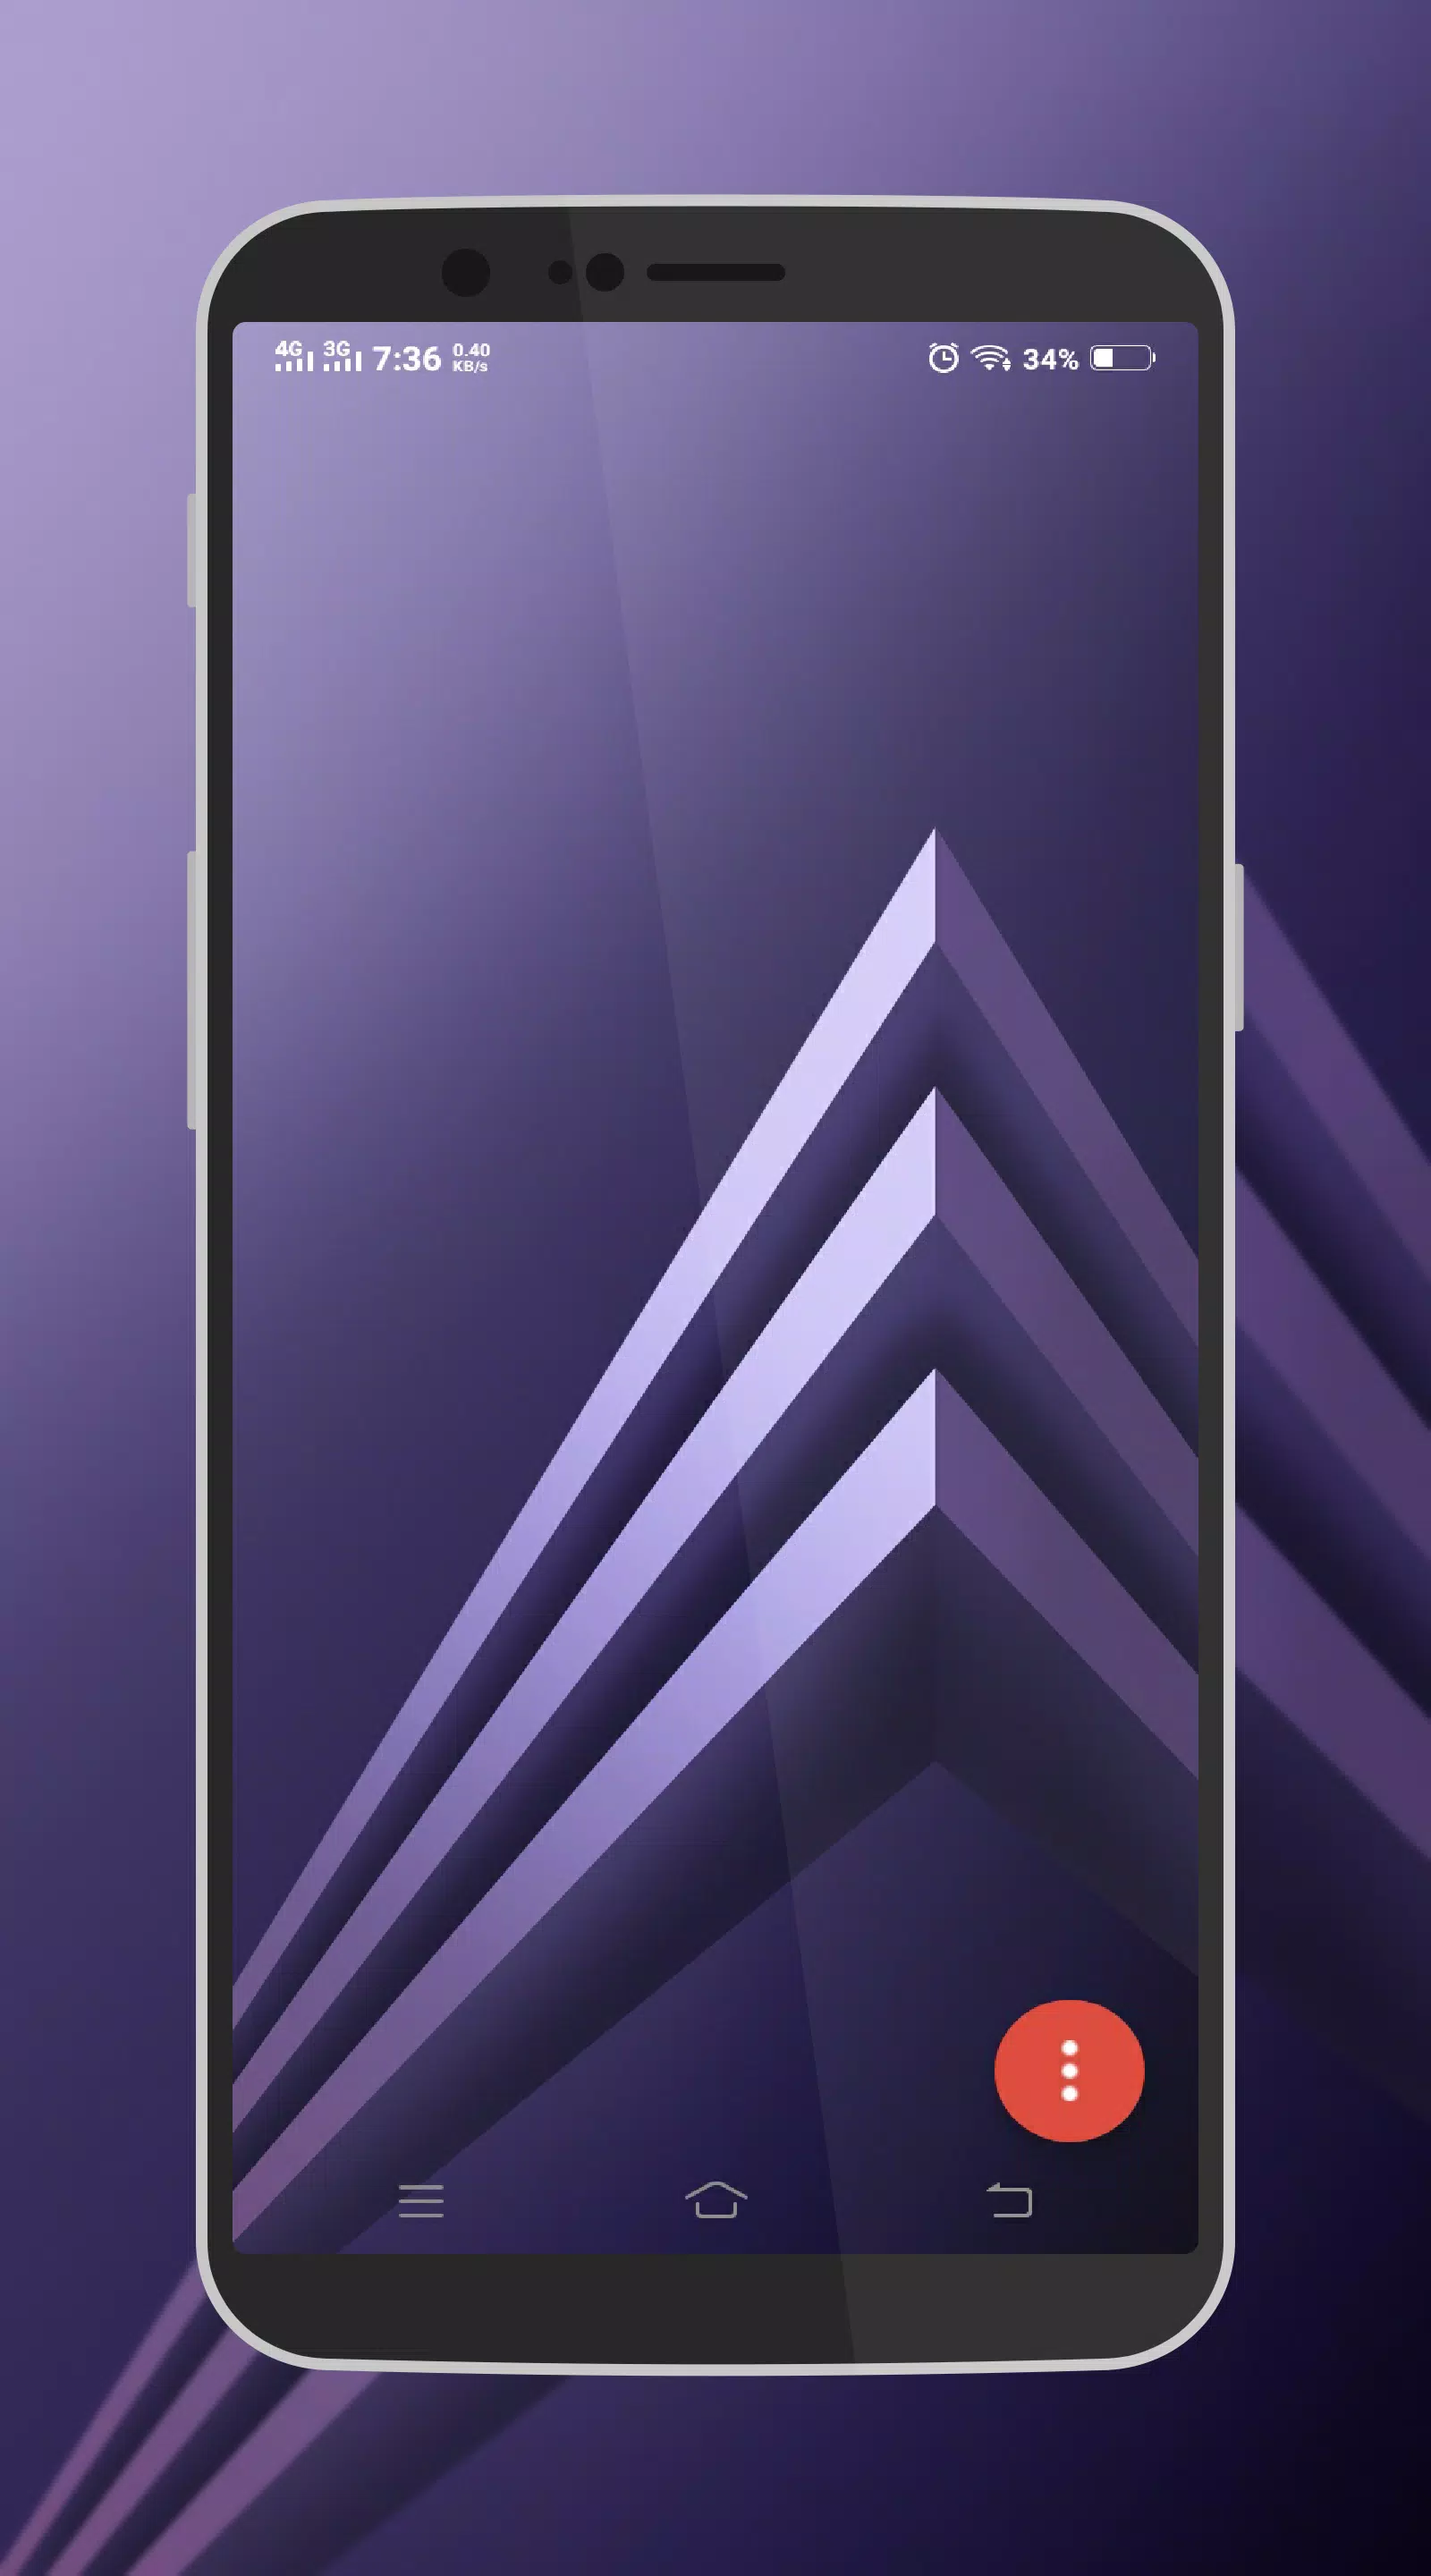 Tải hình nền Samsung A3/A5/A8 2018 APK và thỏa sức sáng tạo với chiếc điện thoại của bạn. Những bức hình nền độc đáo và đẹp mắt sẽ giúp cho chiếc điện thoại của bạn trở nên phong cách và nổi bật hơn. Chỉ với vài thao tác đơn giản, bạn có thể sở hữu những bức hình nền tuyệt đẹp trên điện thoại của mình.